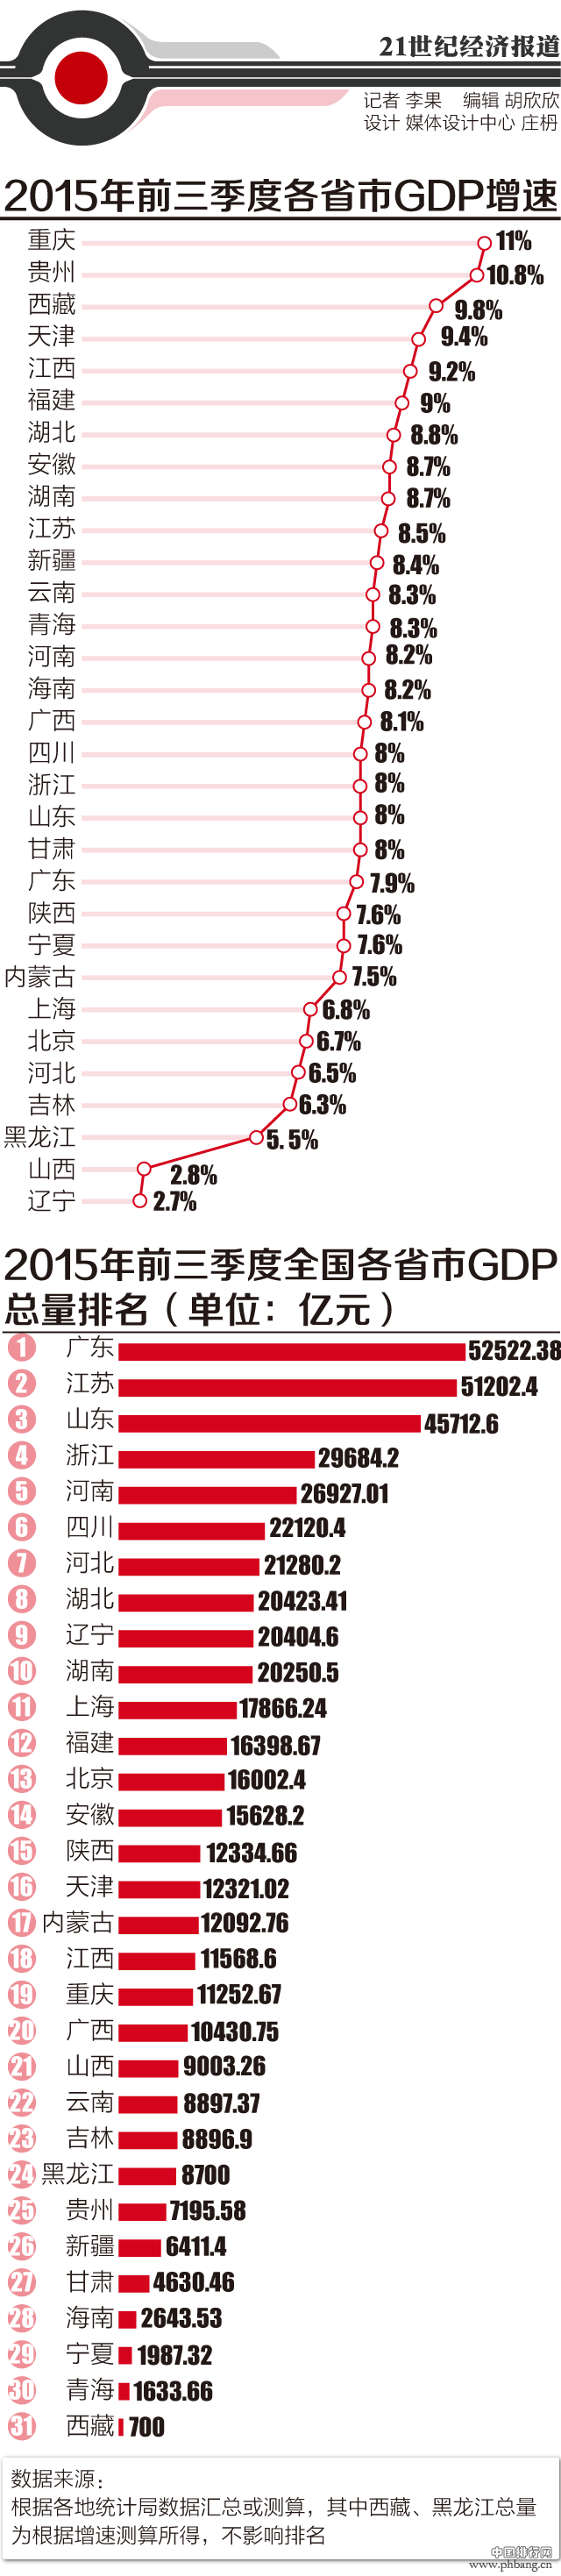 2015年31省前三季度GDP增速排名 重庆增长最快